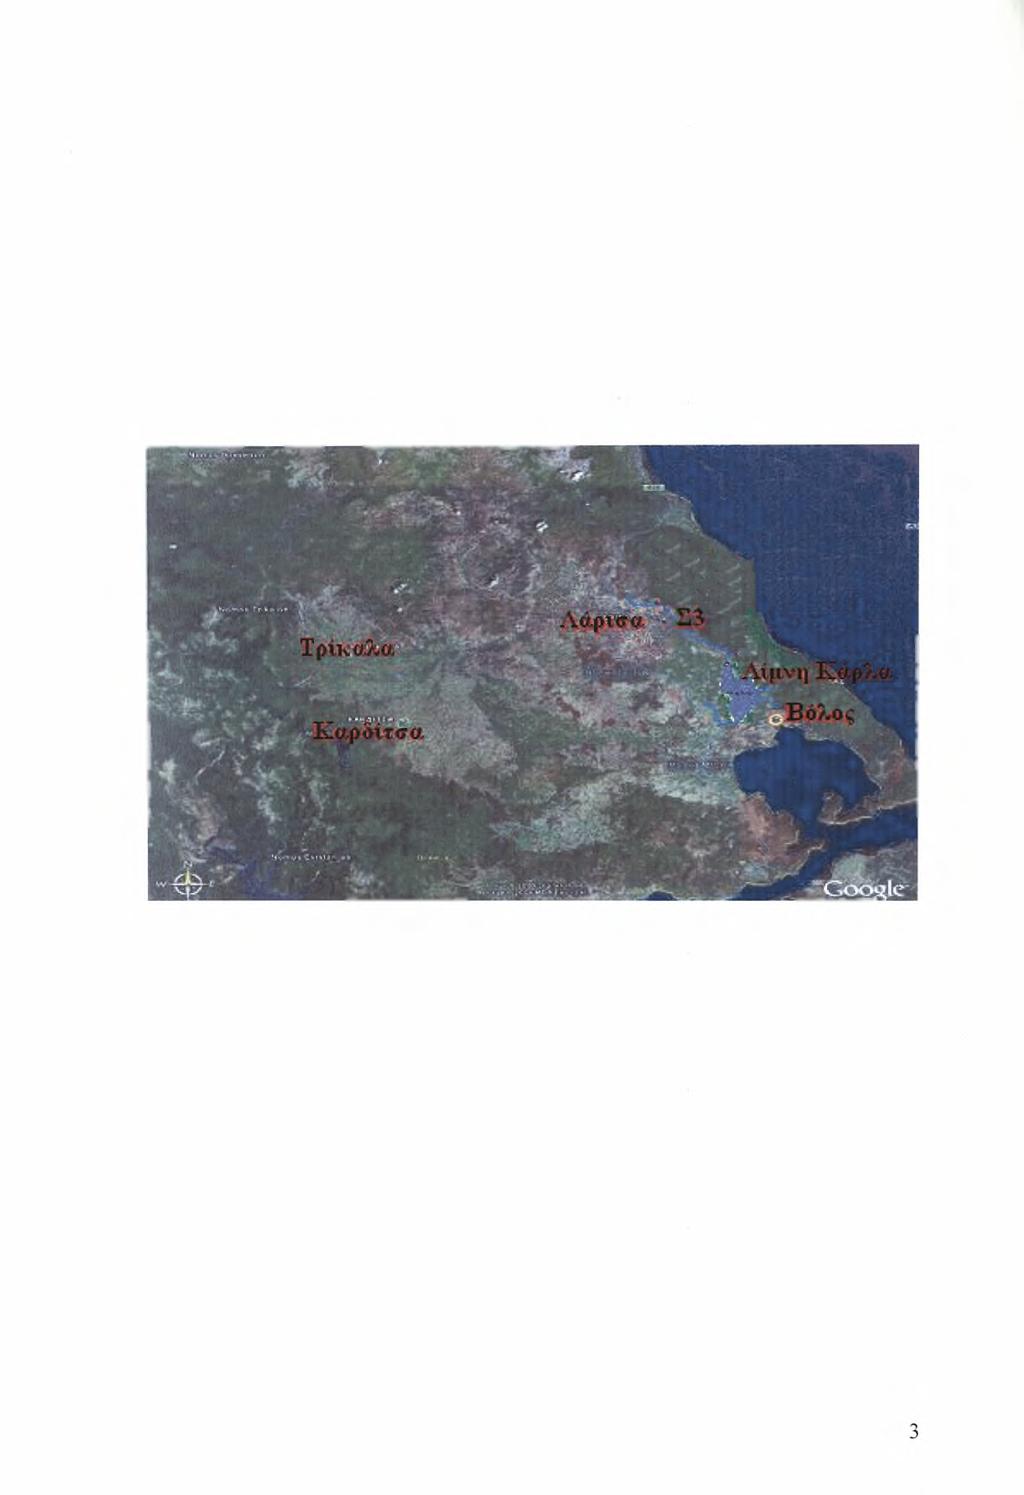 ΚΕΦΑΛΑΙΟ 1 ΕΙΣΑΓΩΓΗ 1.1. Γενικά Η Θεσσαλία καταλαμβάνει το κεντρικό τμήμα της ηπειρωτικής Ελλάδας και αποτελεί αυτόνομη διοικητική περιφέρεια, όπου διοικητικά υπάγονται και οι Σποράδες εκτός από τη Σκύρο.